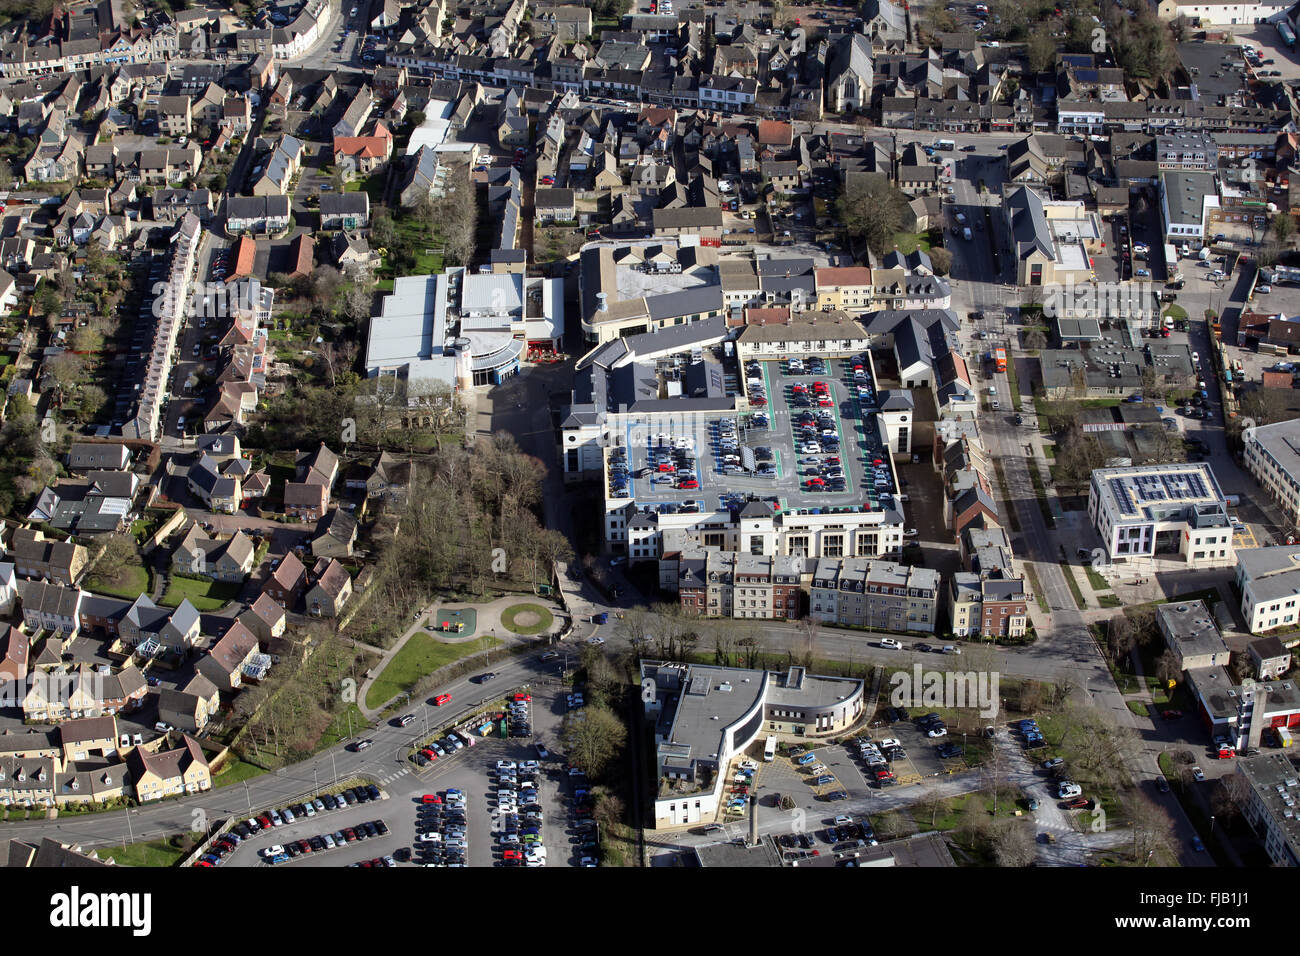 Vue aérienne du centre-ville de Witney Oxfordshire, UK Banque D'Images